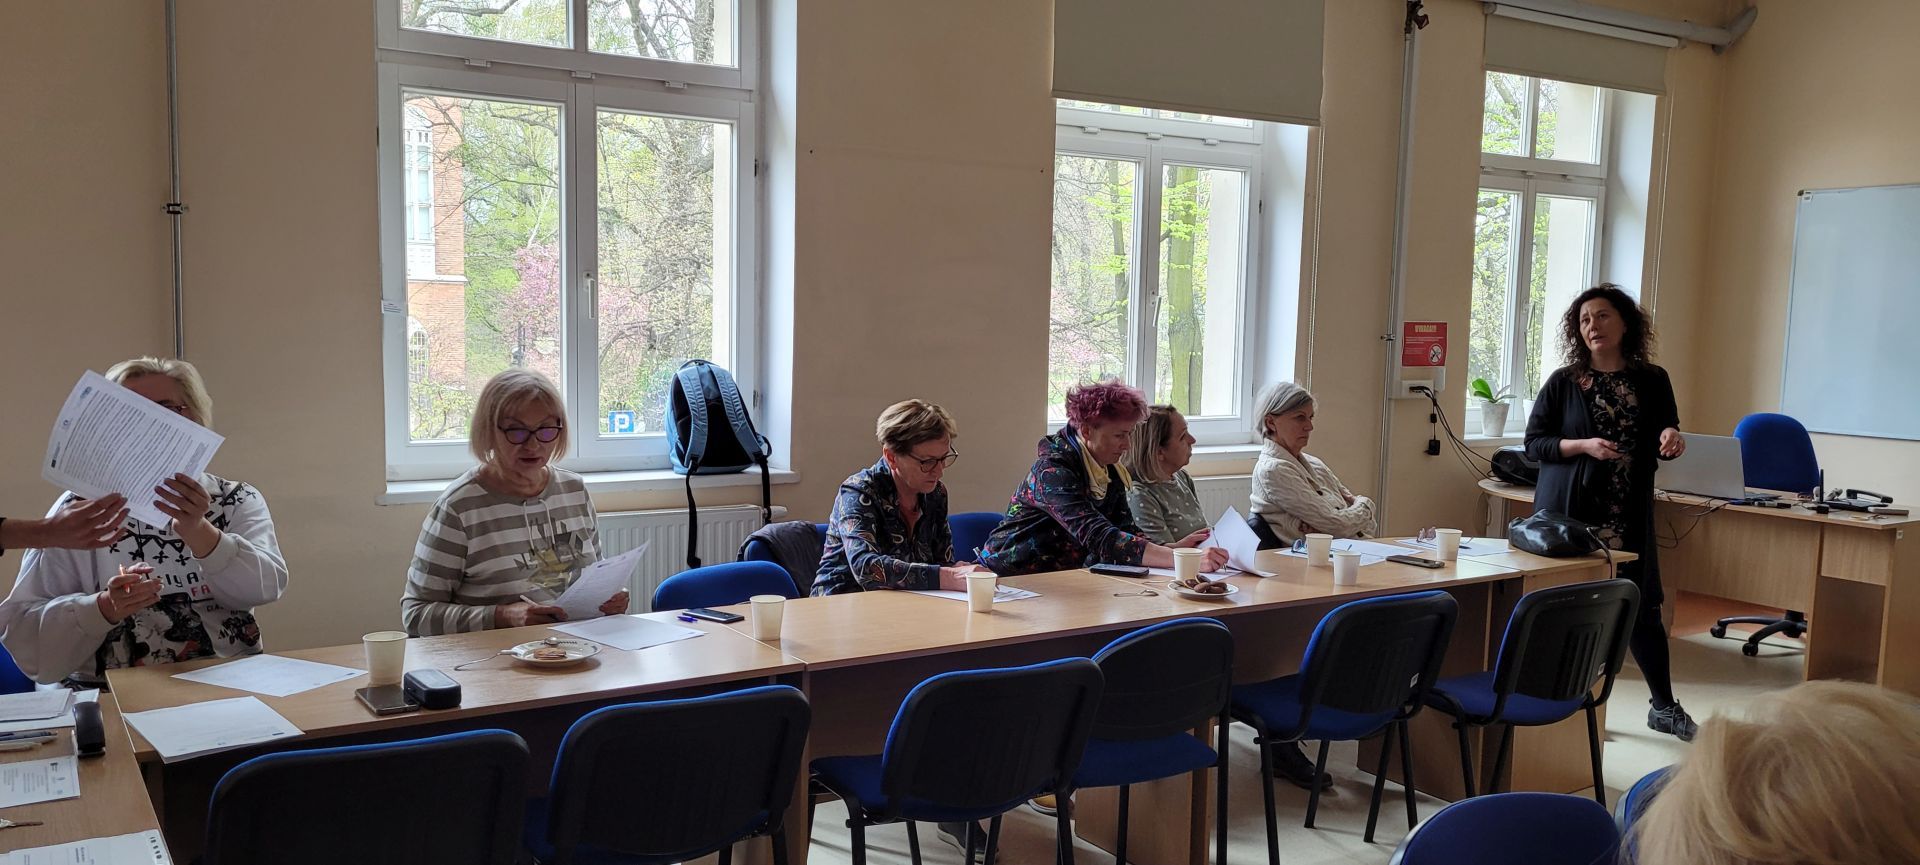 Na zdjęciu jest 6 uczestniczek projektu "Z Erasmusem po Europie, sopoccy seniorzy w Hiszpanii" 4 z nich robią notatki. Pozostałe dwie słuchają wykładu.